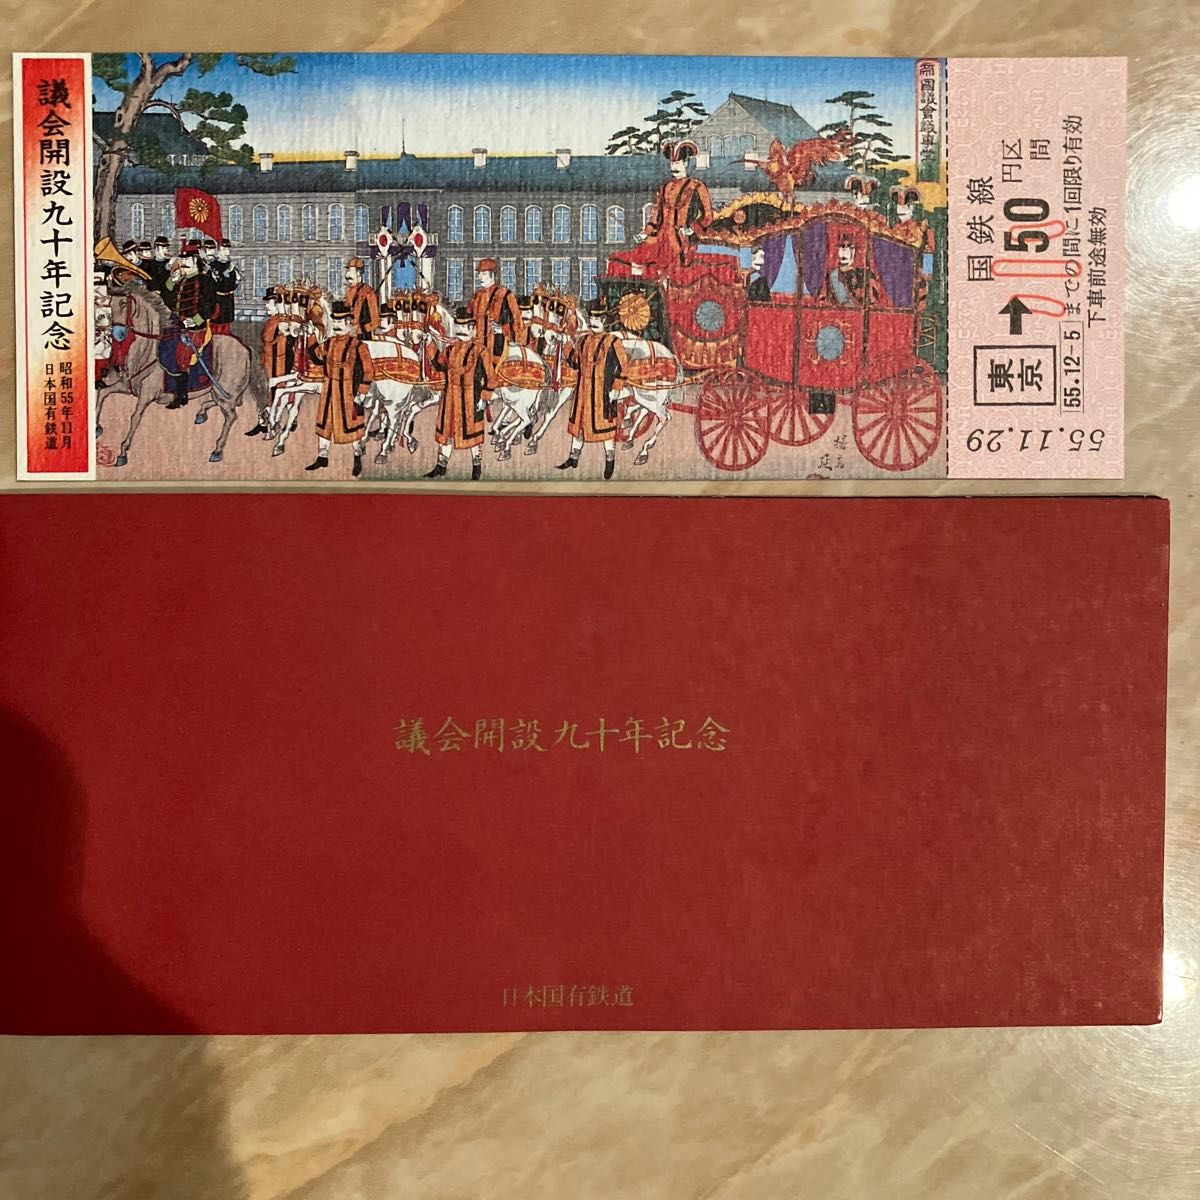 日本国有鉄道 議会開設九十年記念 記念入場券 古い切符